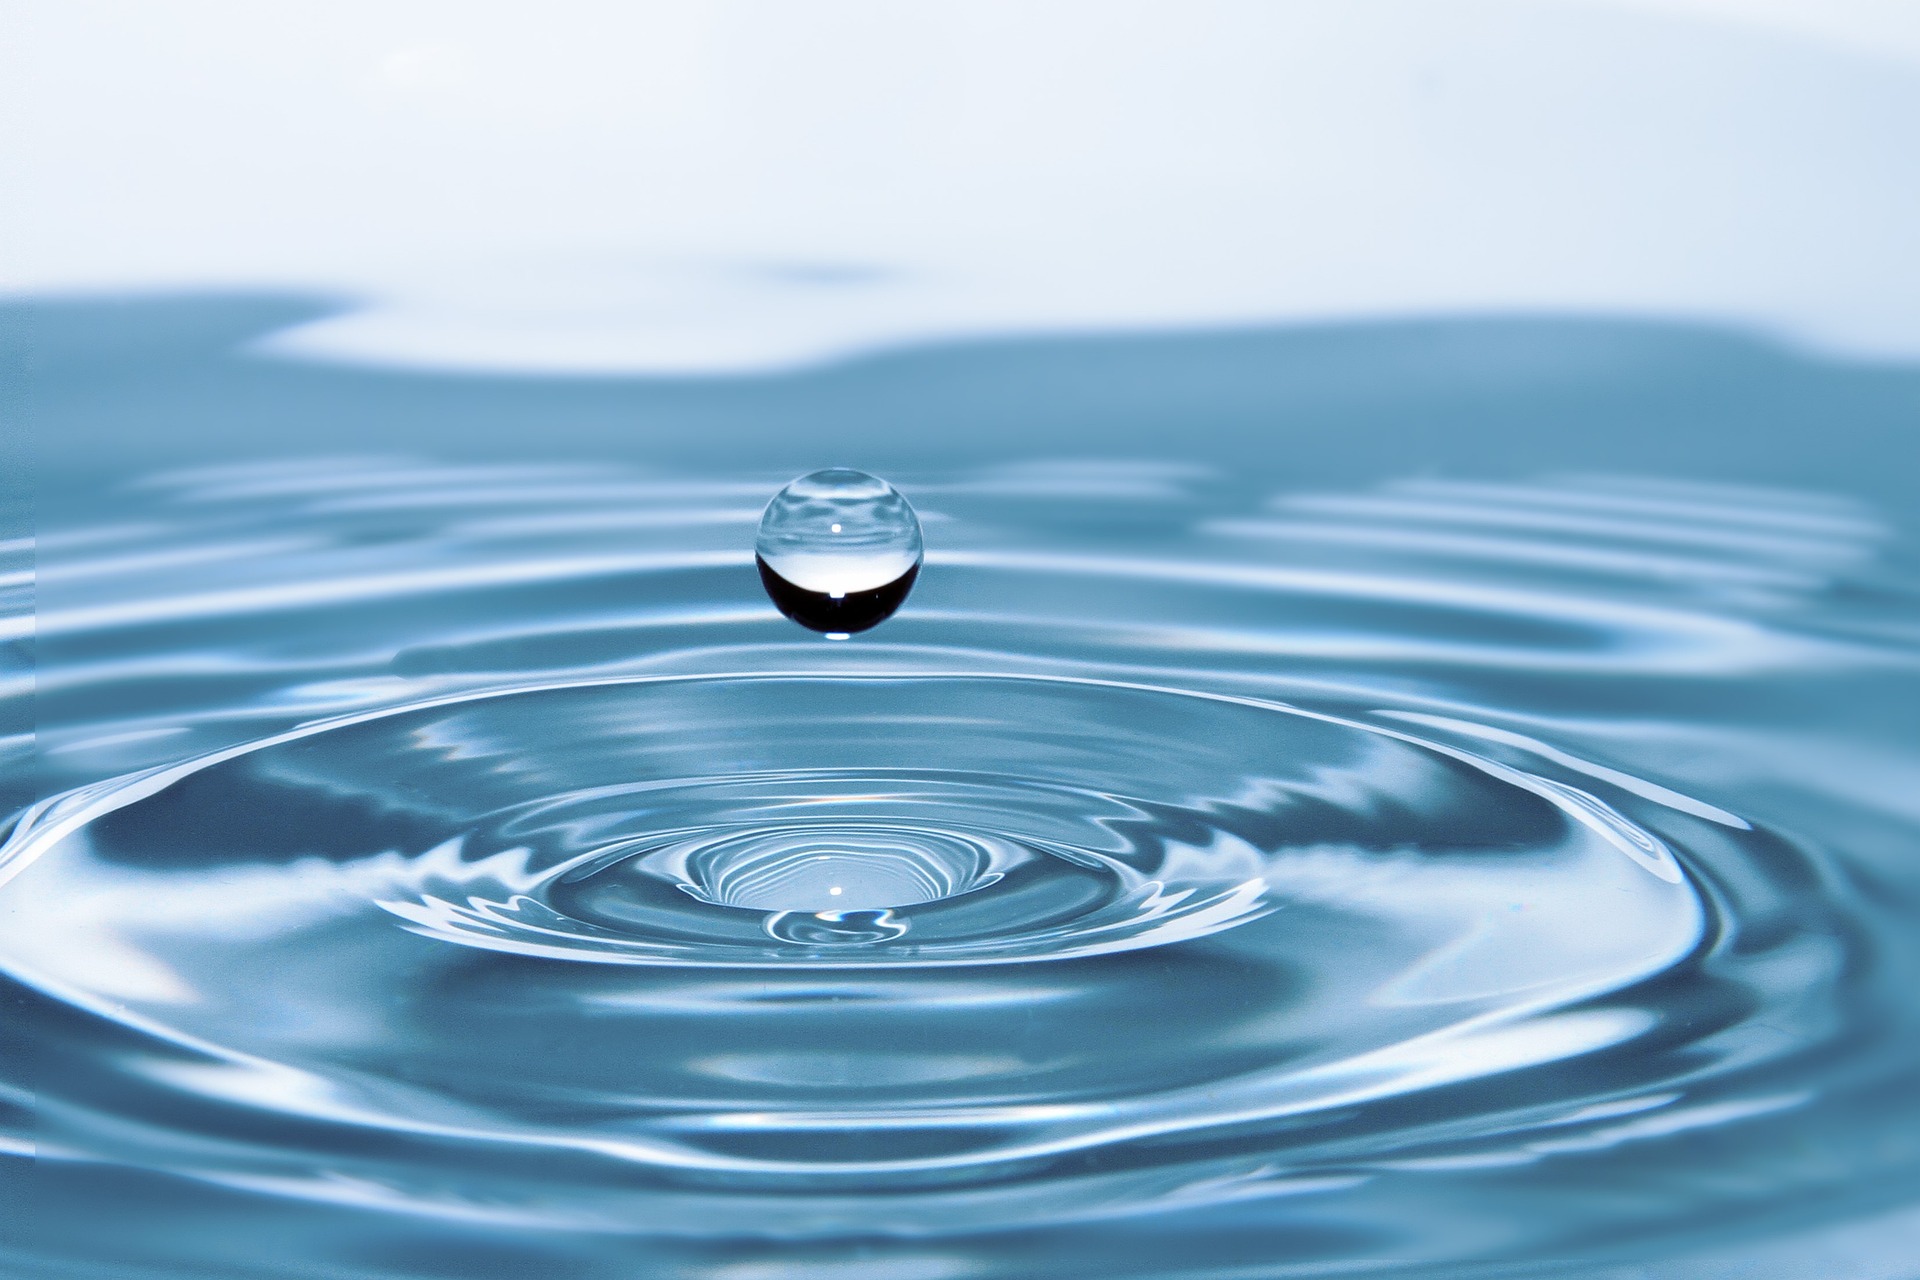 Post precedente: Oggi è la Giornata mondiale dell’acqua 2023